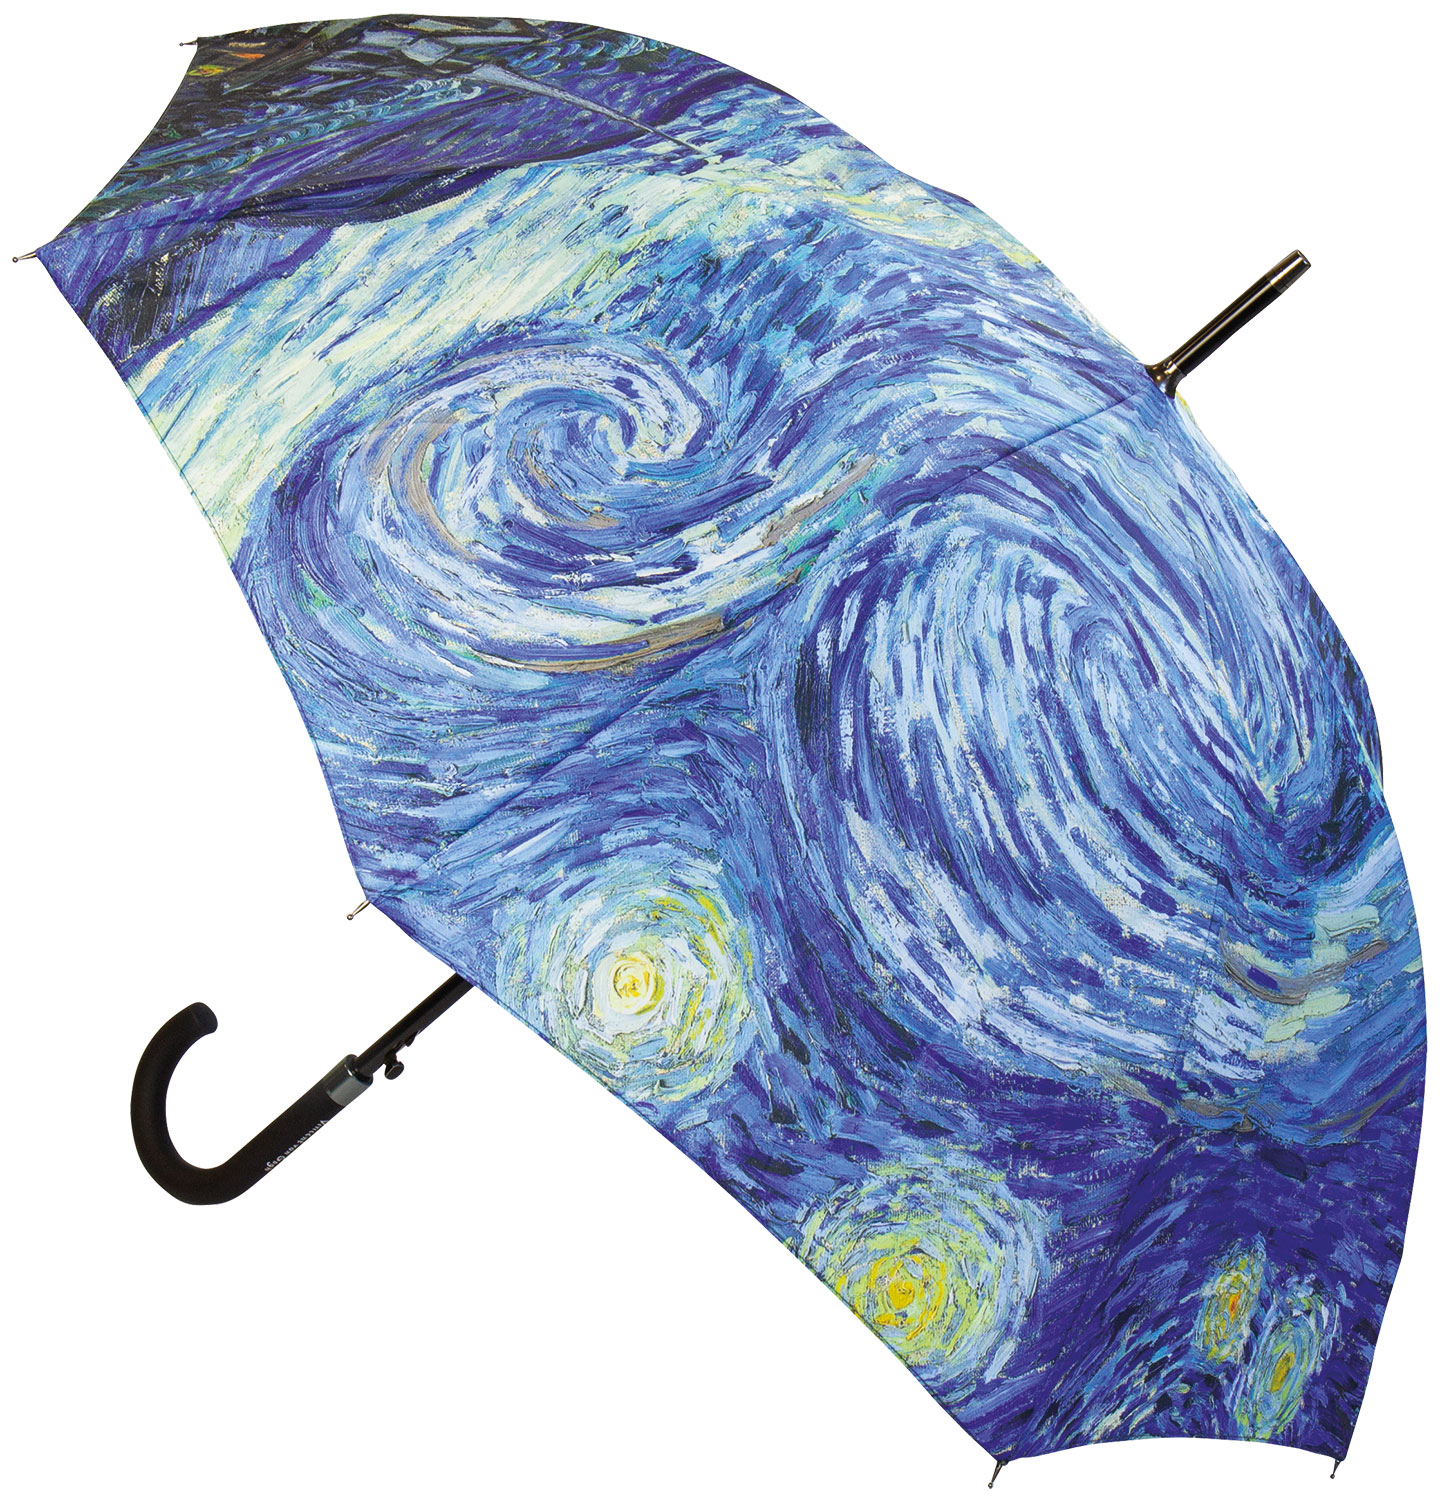 Stockschirm "Sternennacht" von Vincent van Gogh